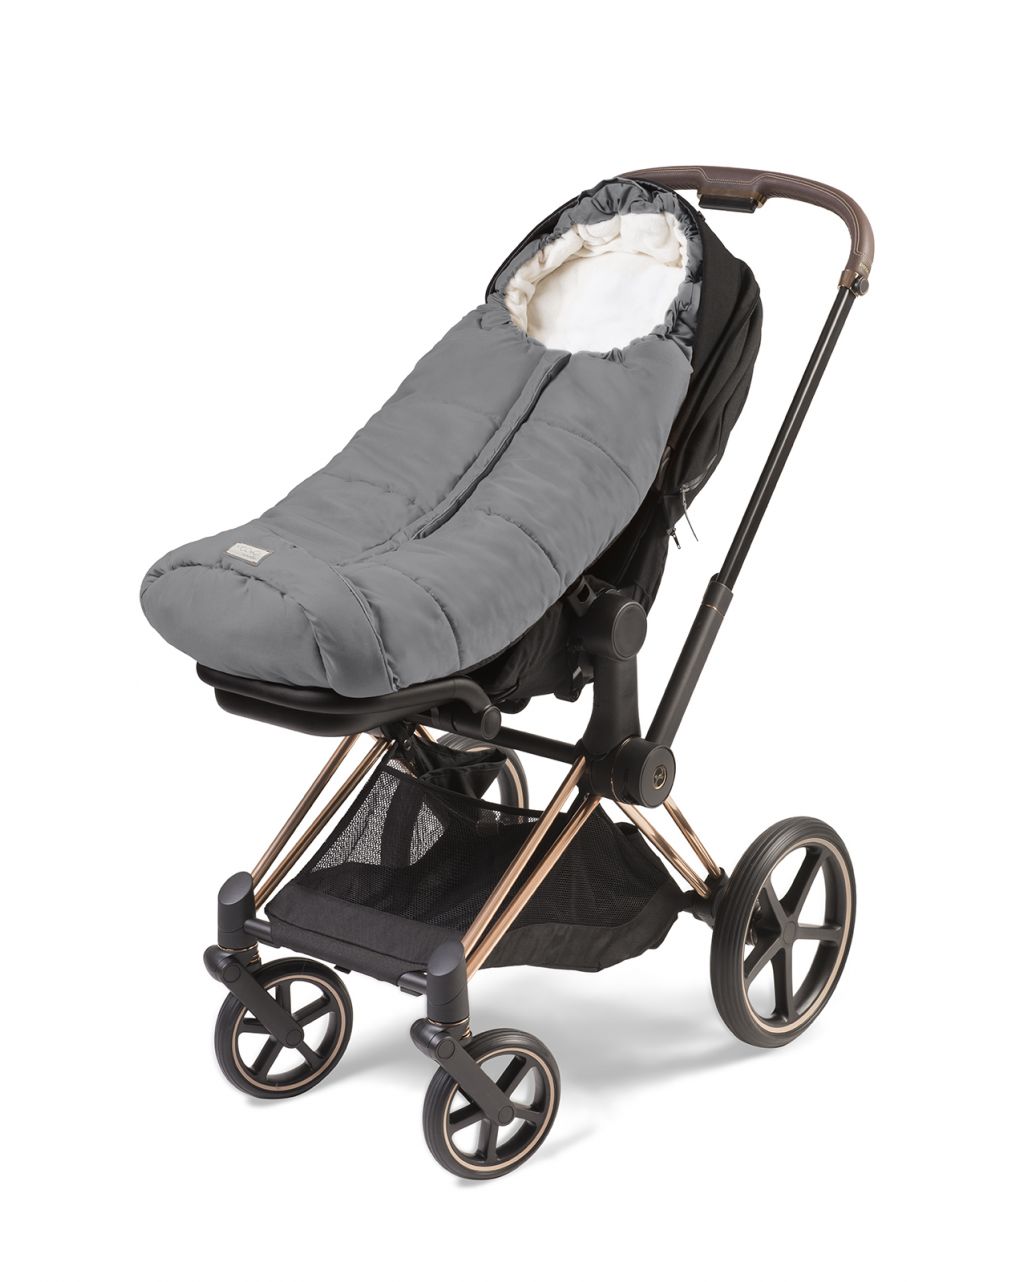 Moovo junior city cinzento - saco universal para carrinho de bebé 6/36 meses - nuvita - Nuvita